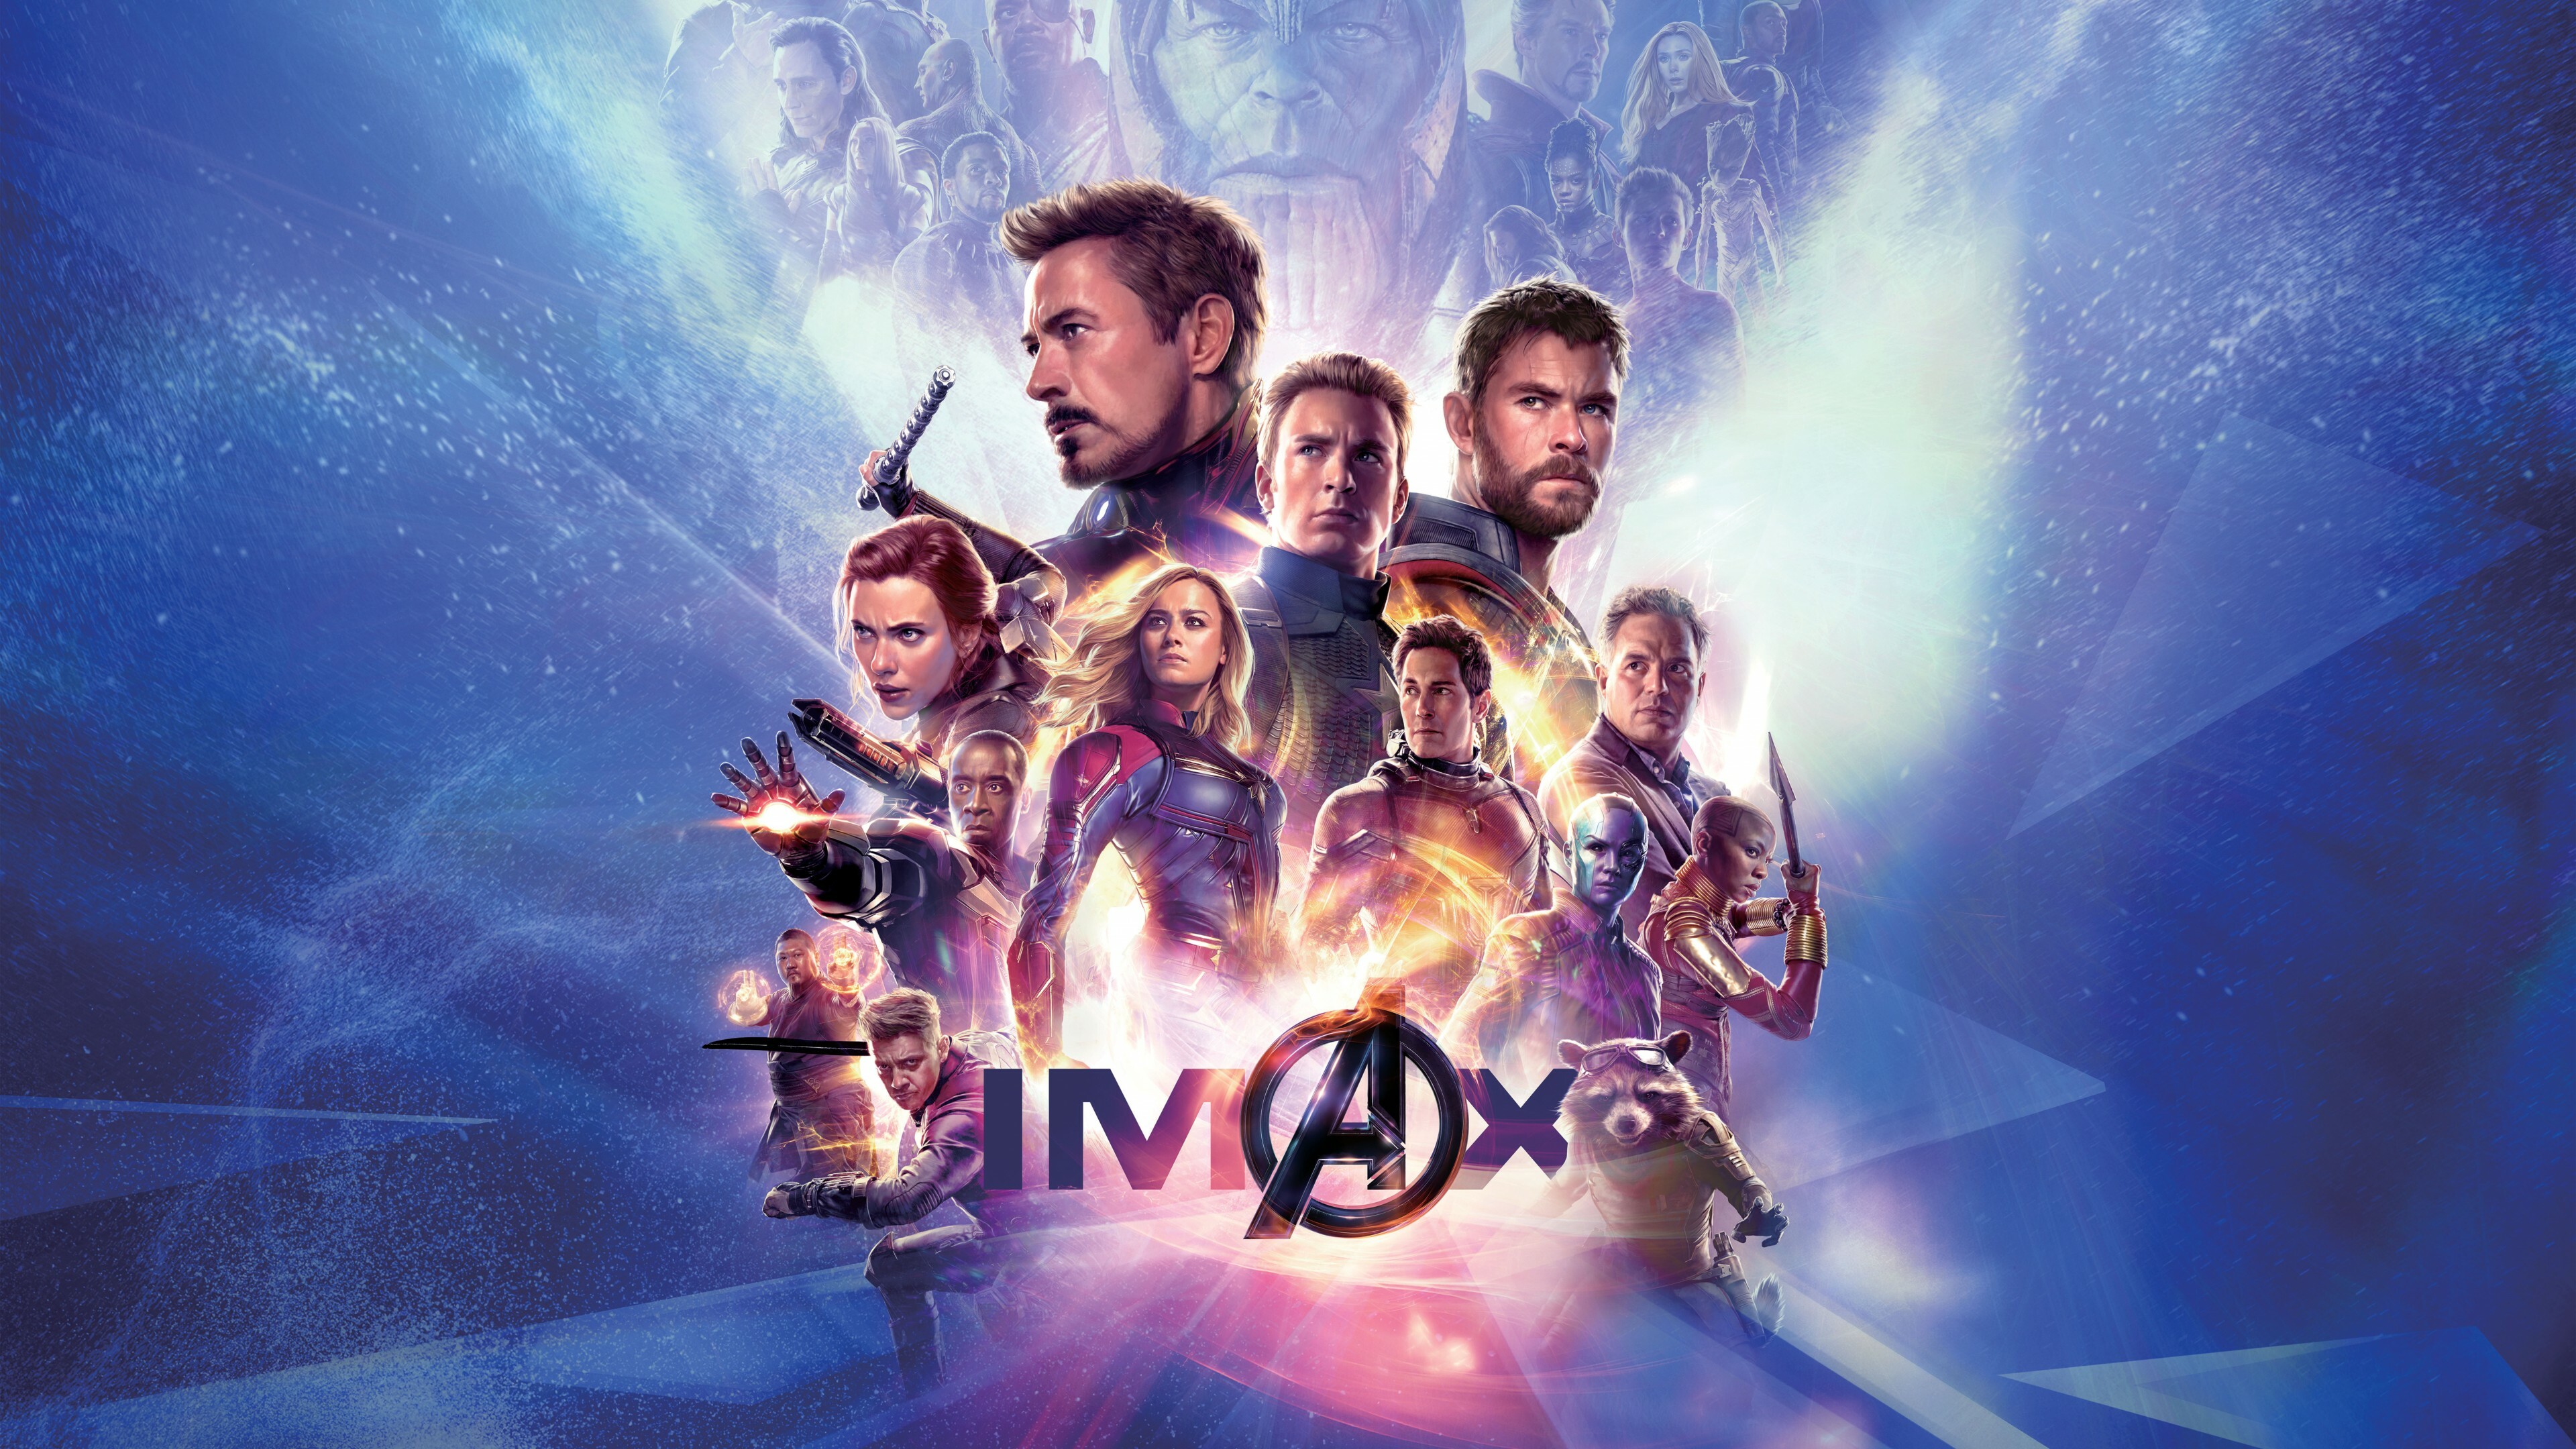 Avengers: Endgame, IMAX Poster, Superheroes. 3840x2160 4K Wallpaper.